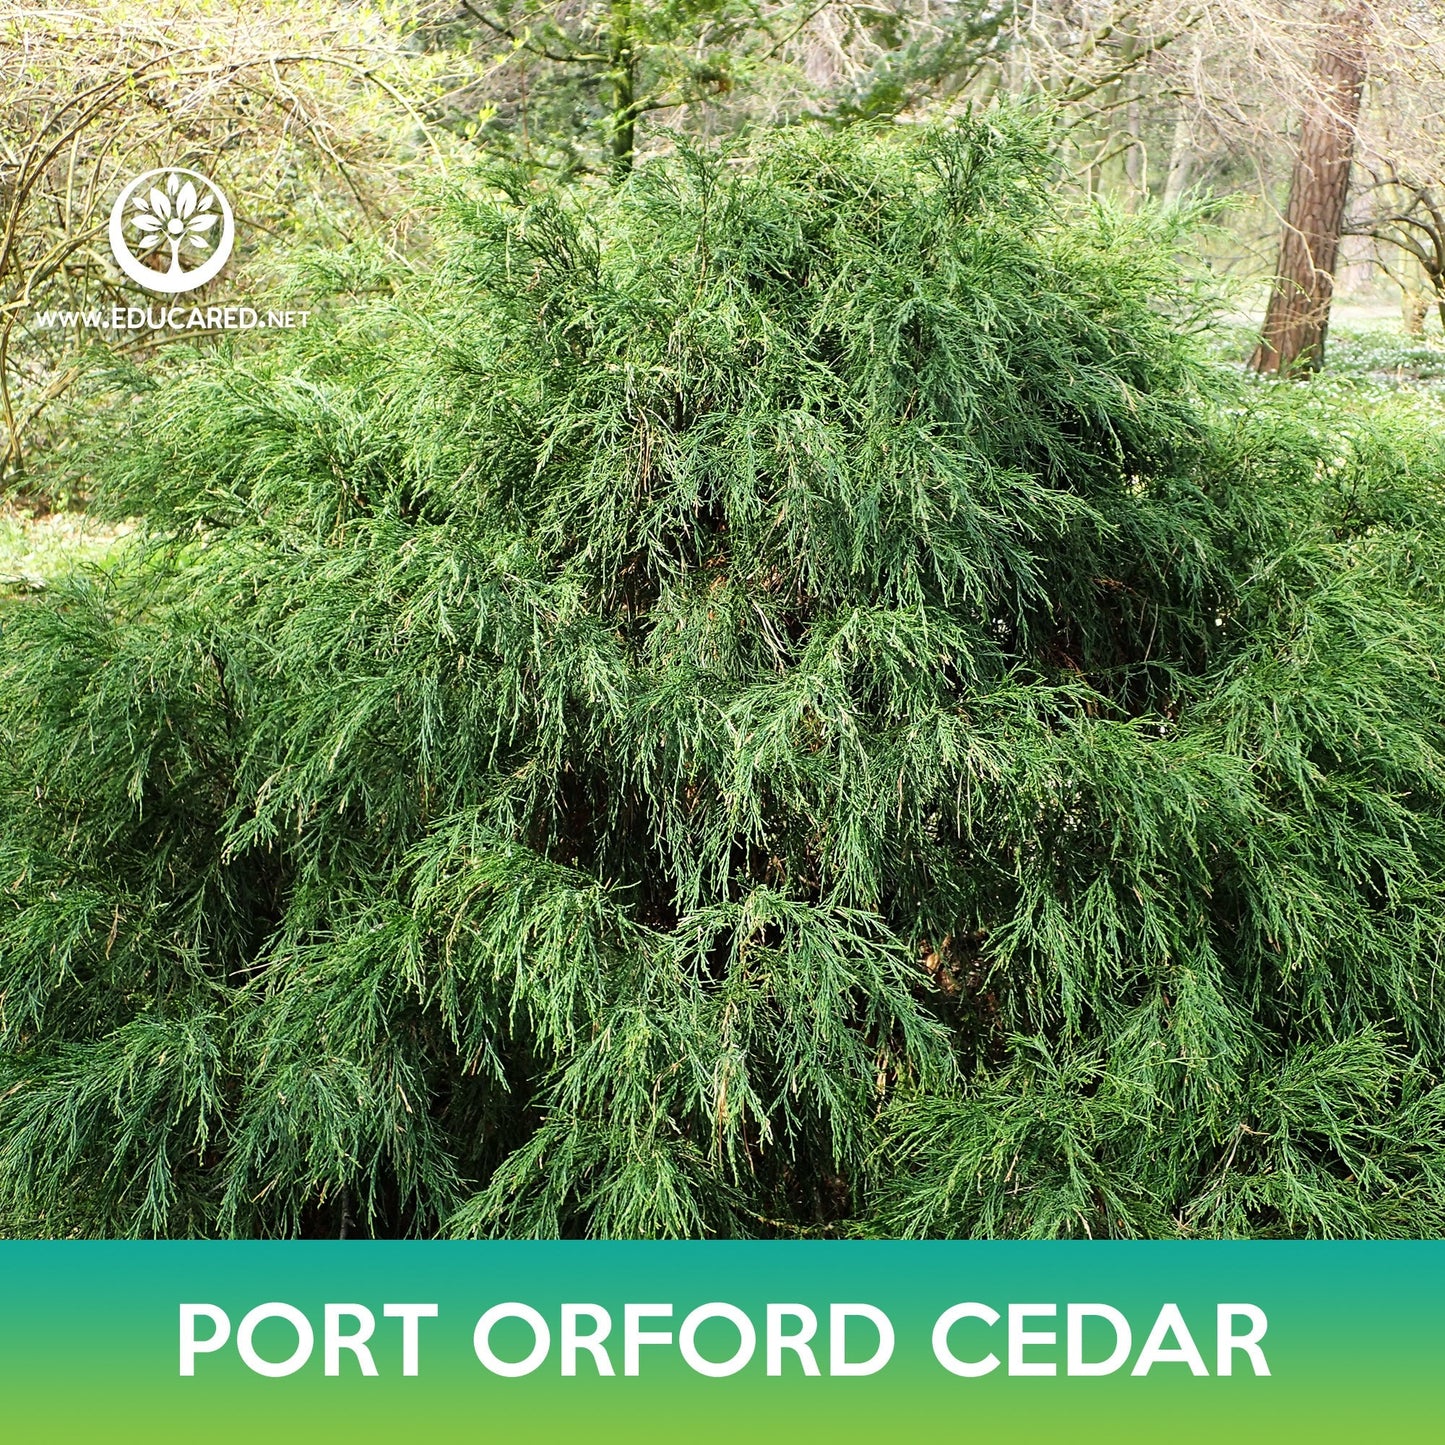 Port Orford Cedar Seeds, Lawson Cypress, Chamaecyparis lawsoniana